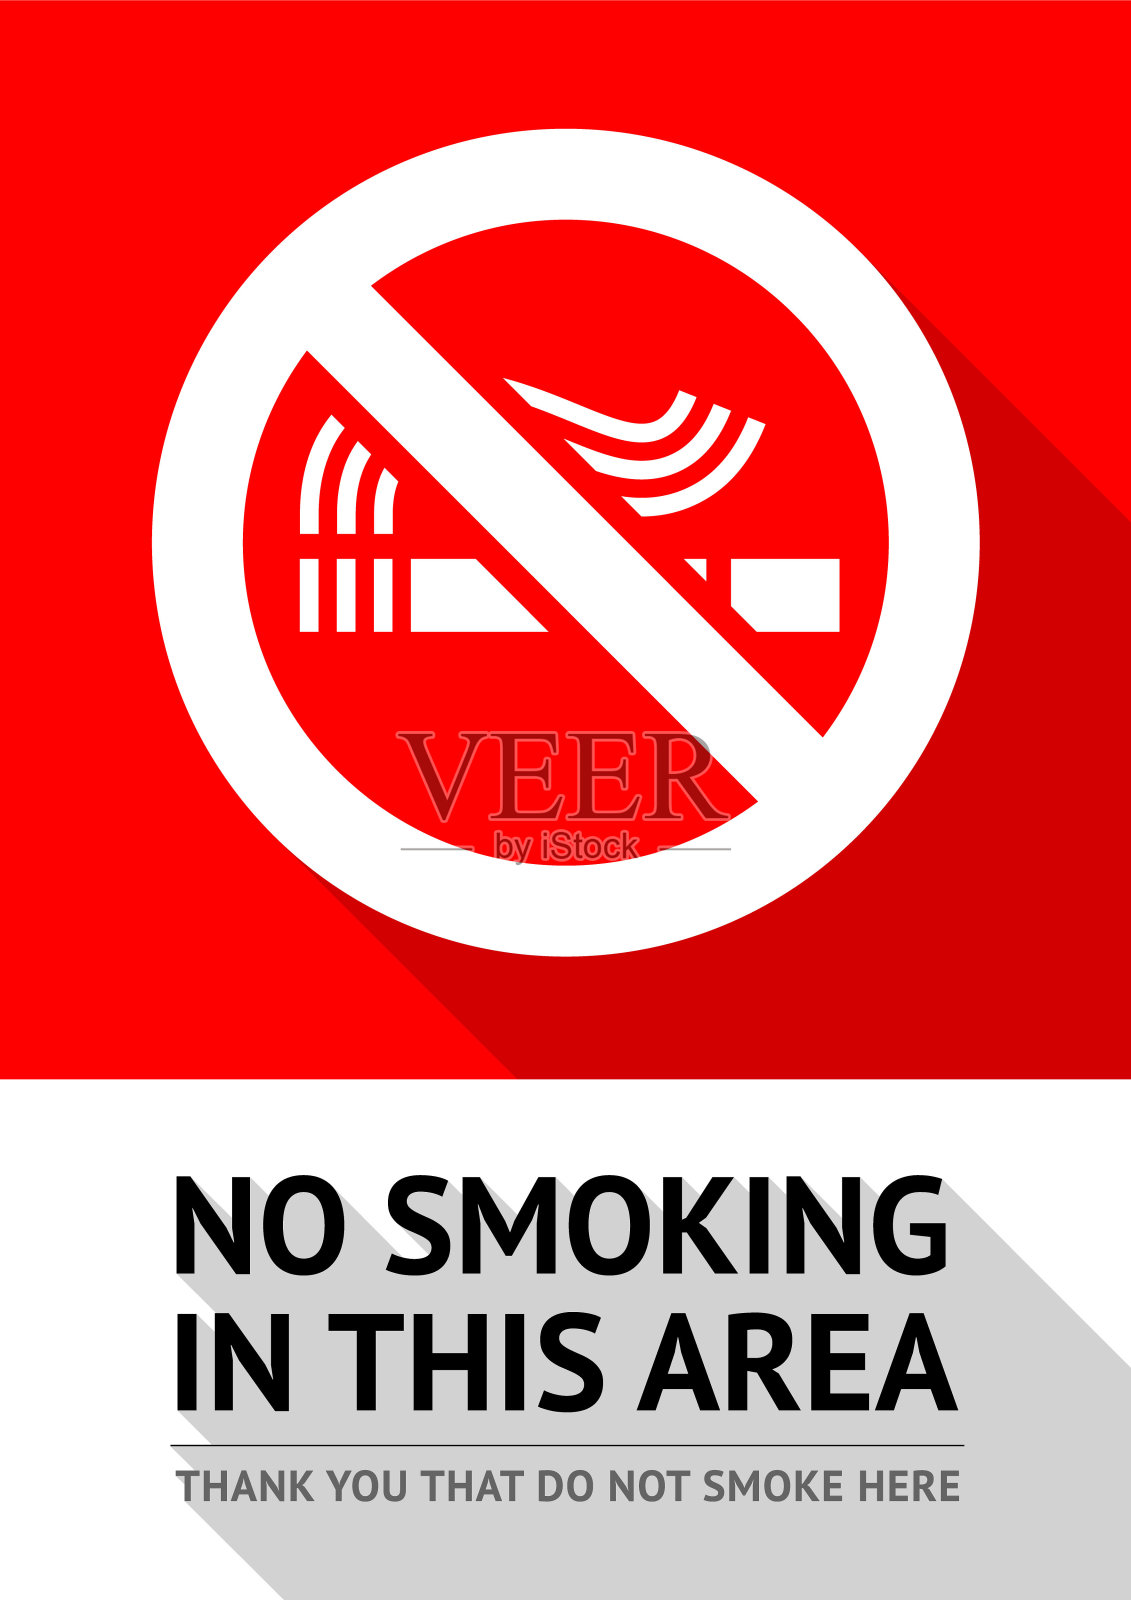 禁止吸烟区域插画图片素材